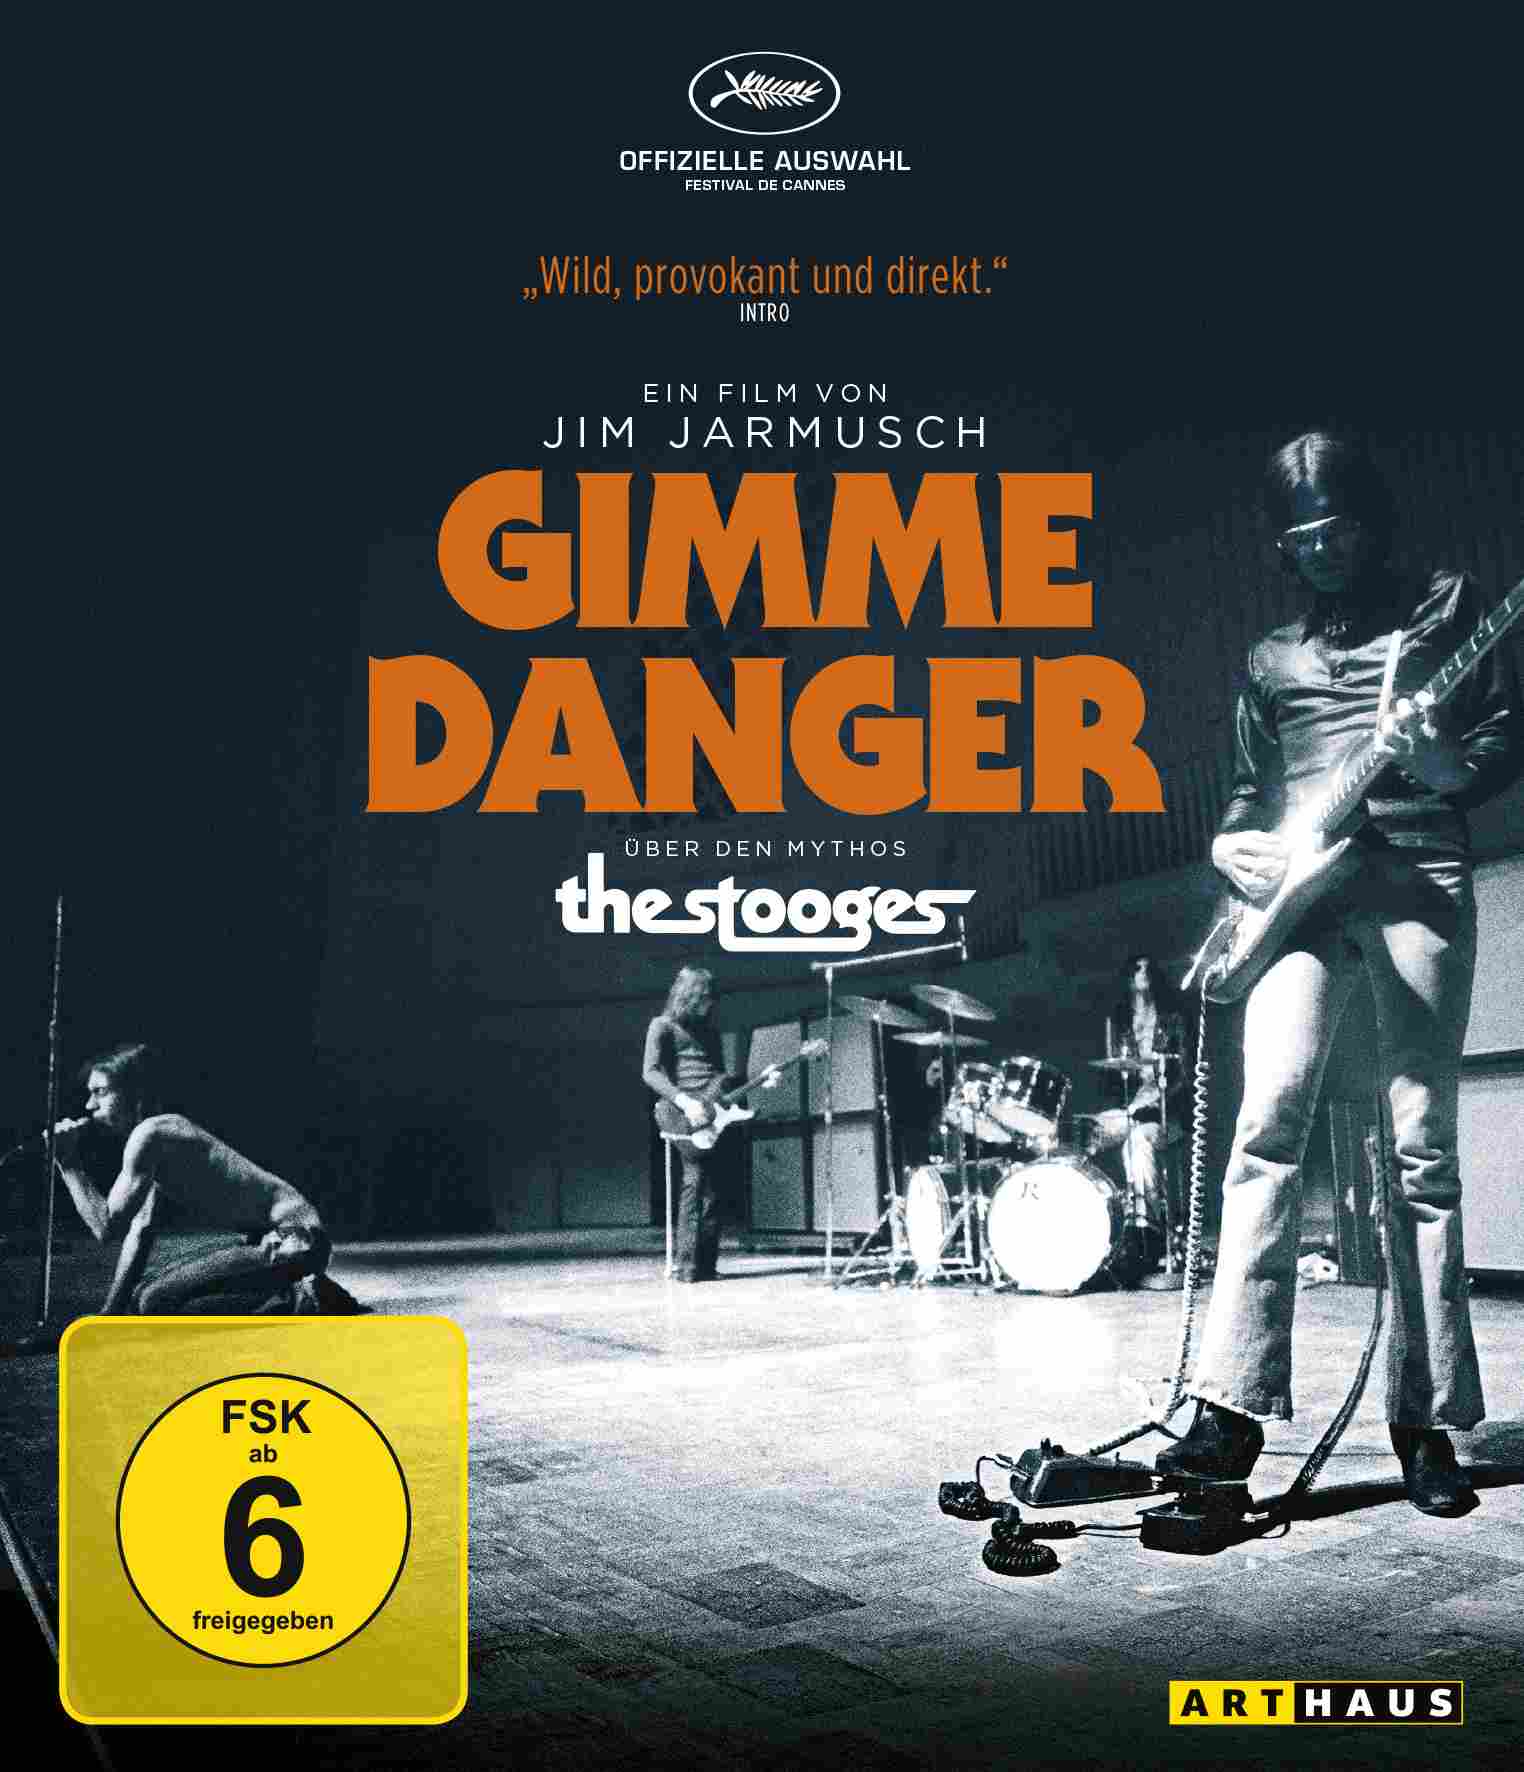 Gimme Danger - Digipak Bild 1.jpg